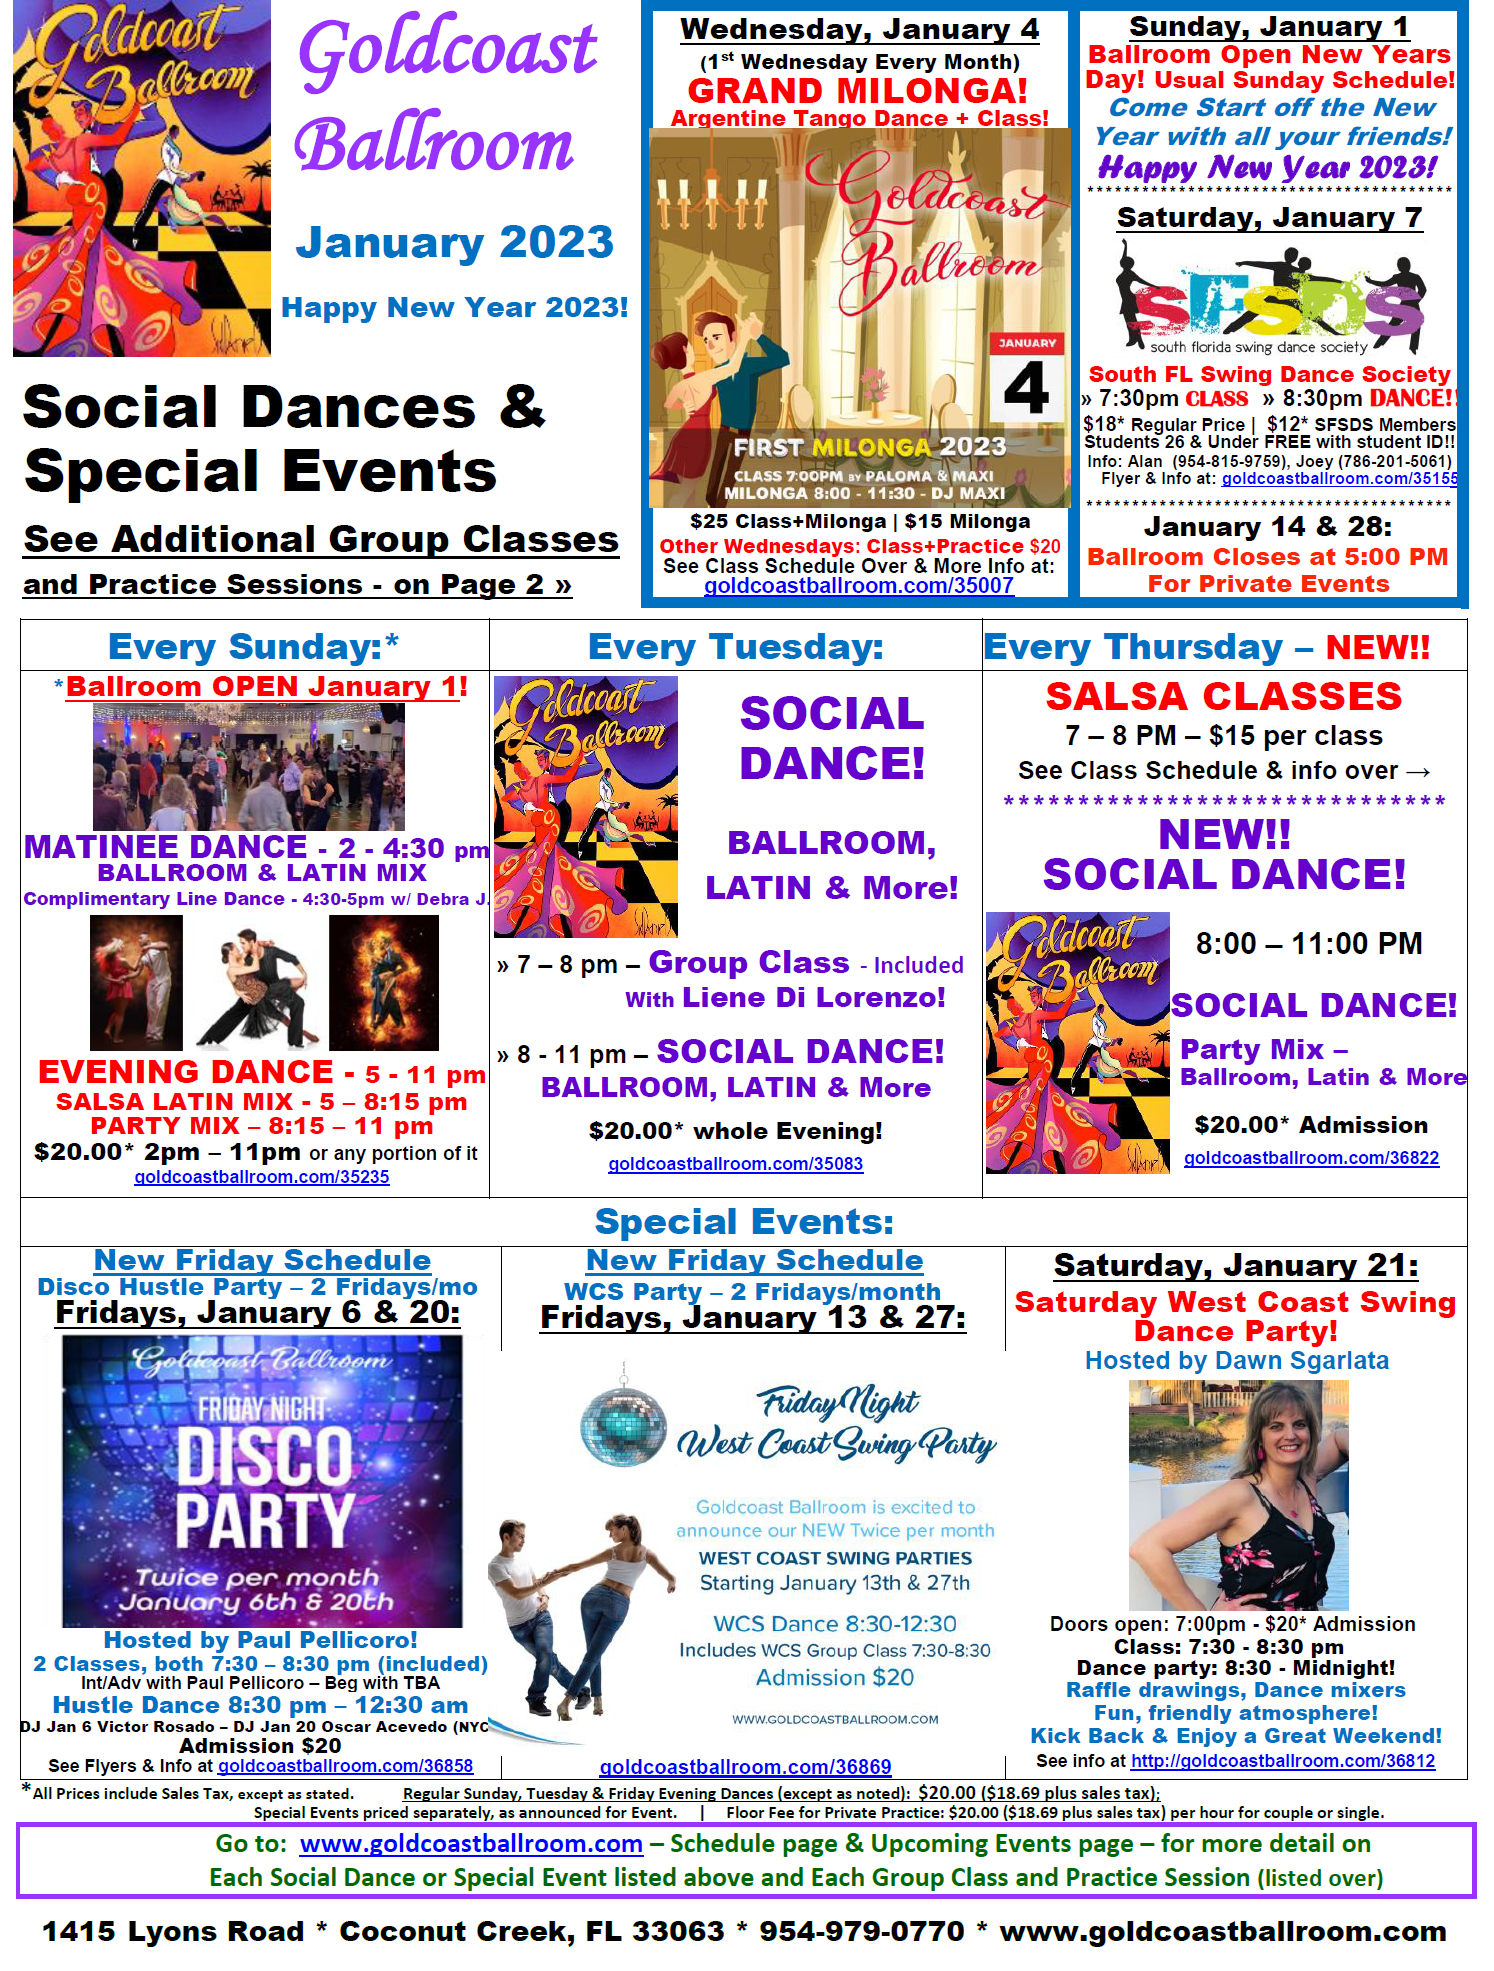 January 2023 Calendar - Social Dances & Special Events